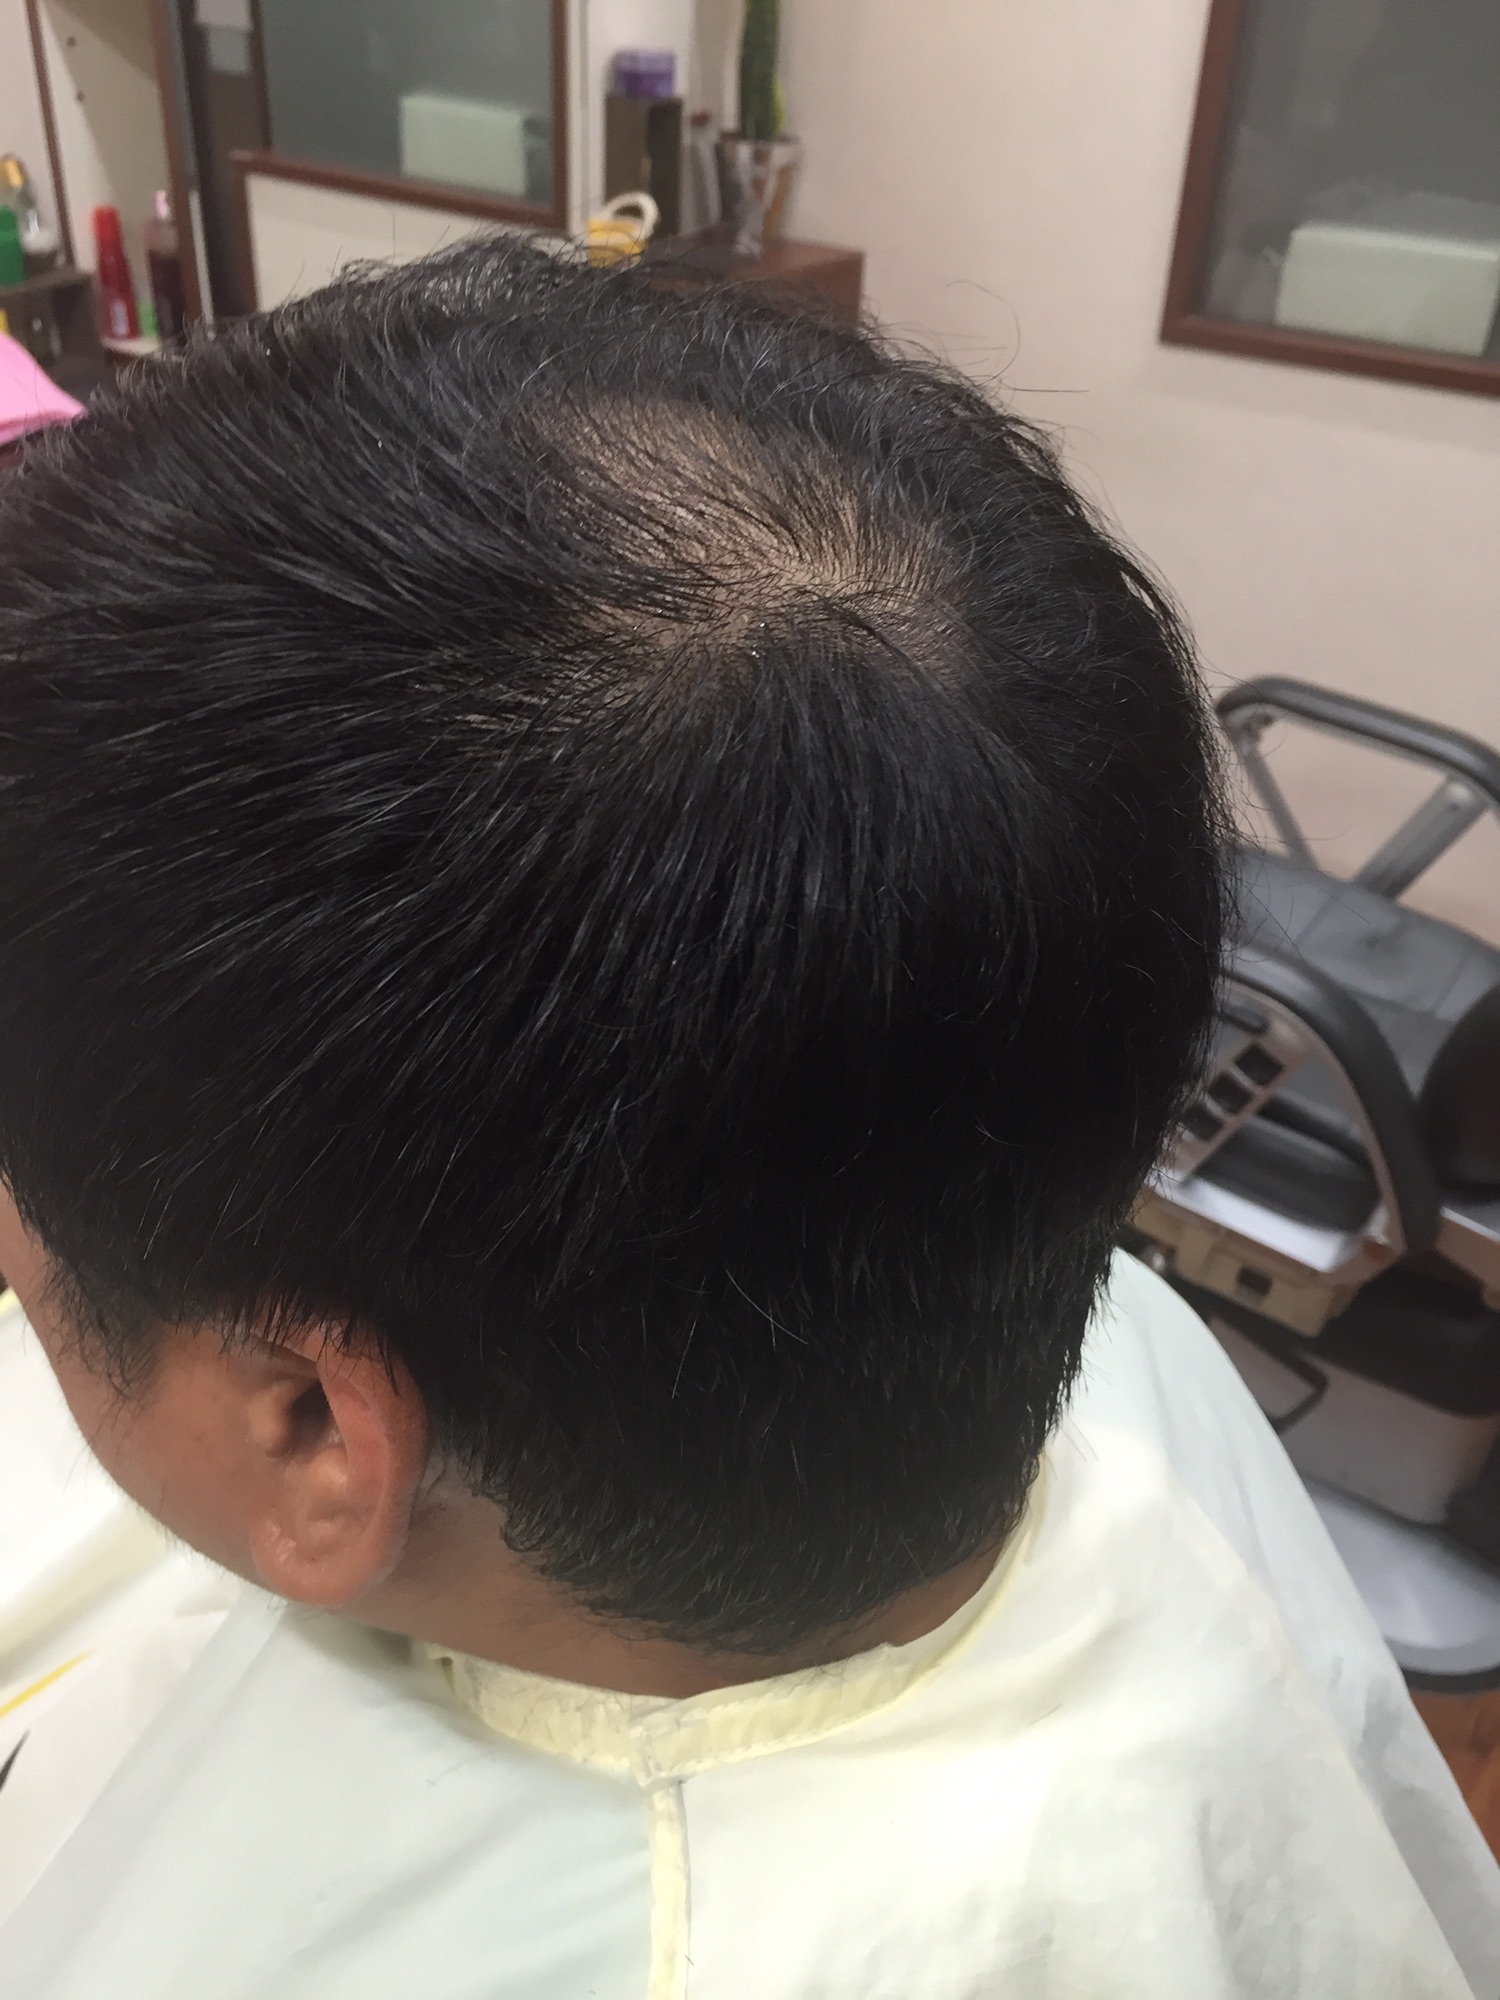 男性の薄毛対策のヘアスタイル 大東市理容店 Hair Salon Kurisu 平日